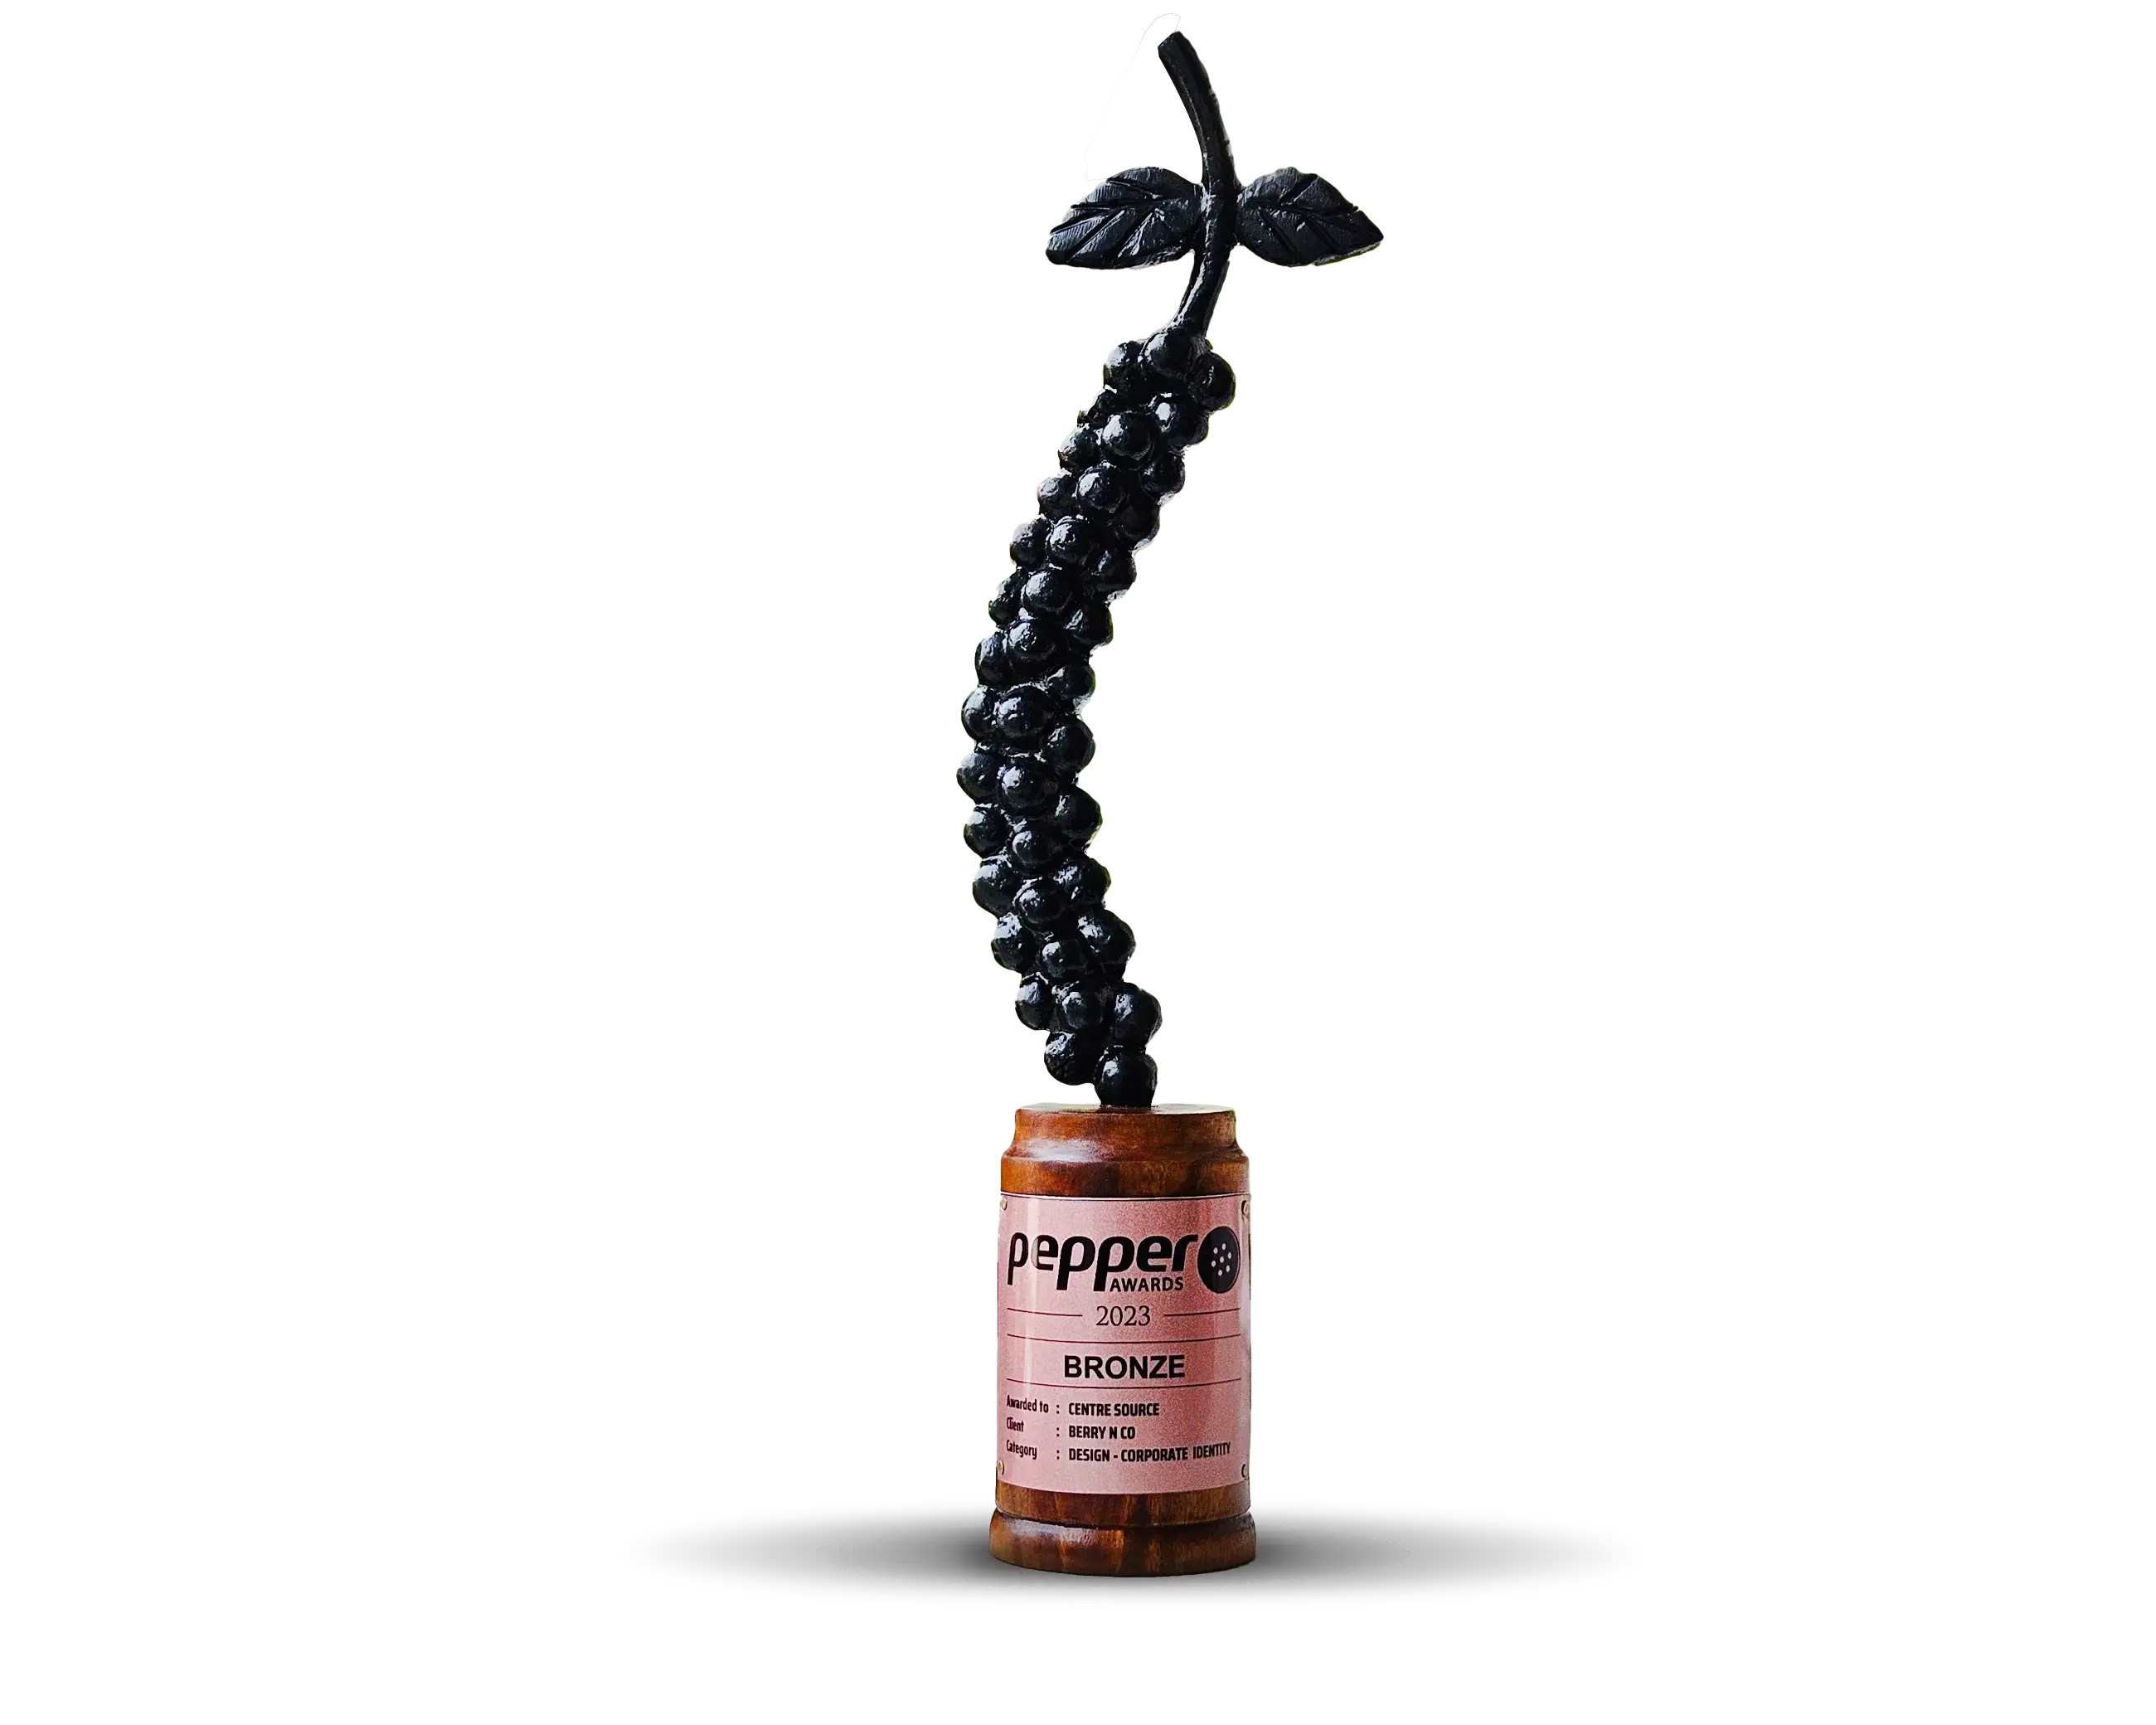 Pepper-award-1 (2).webp